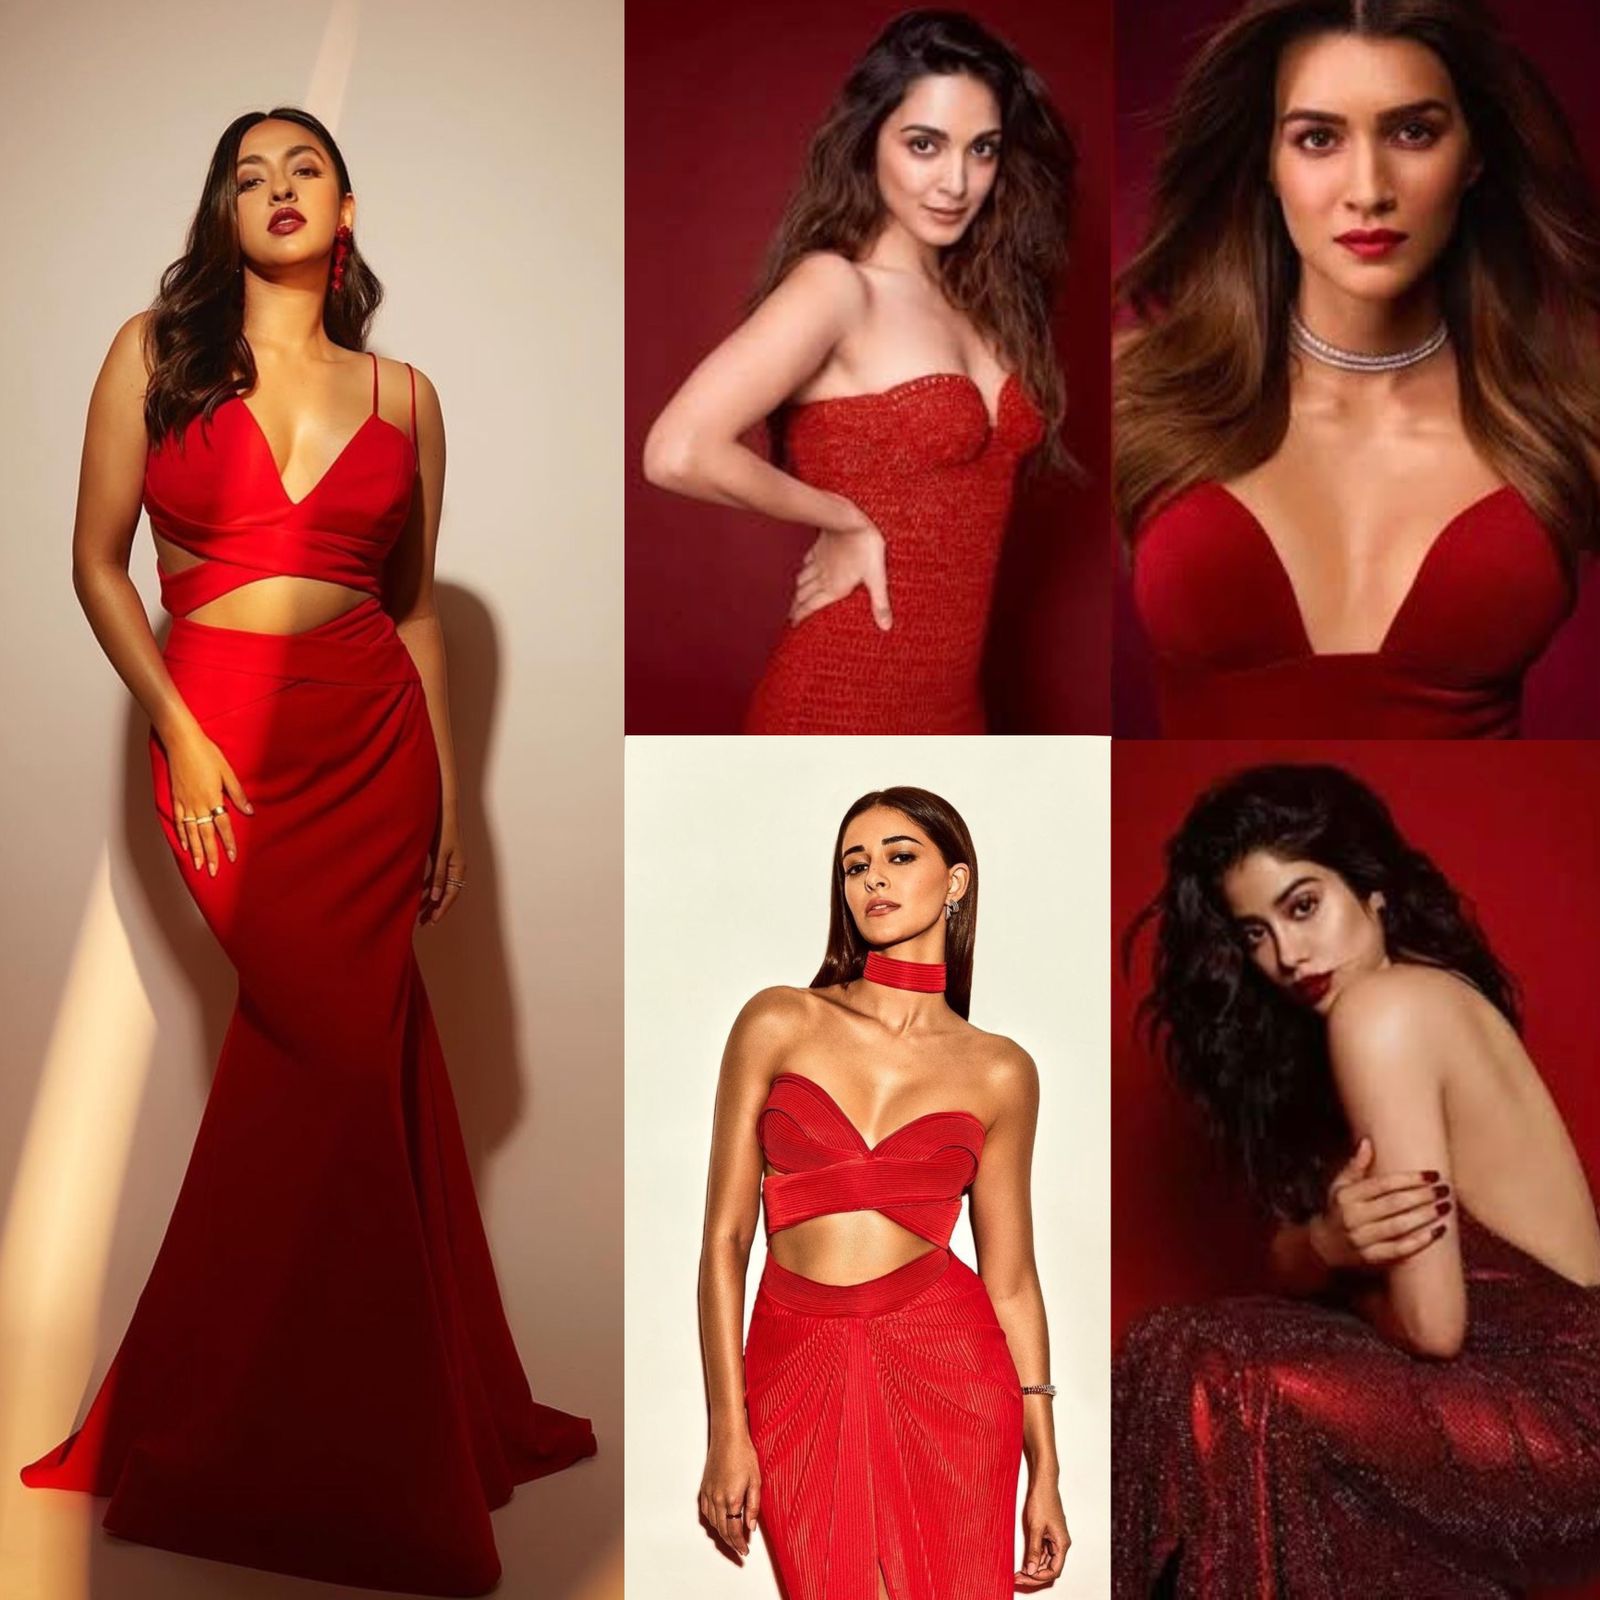 जाह्नवी कपूर से लेकर कियारा आडवाणी तक वैलेंटाइन डे वीक में रेड ड्रेस में लग रही है ये अभिनेत्रियाँ बेहद खुबसूरत